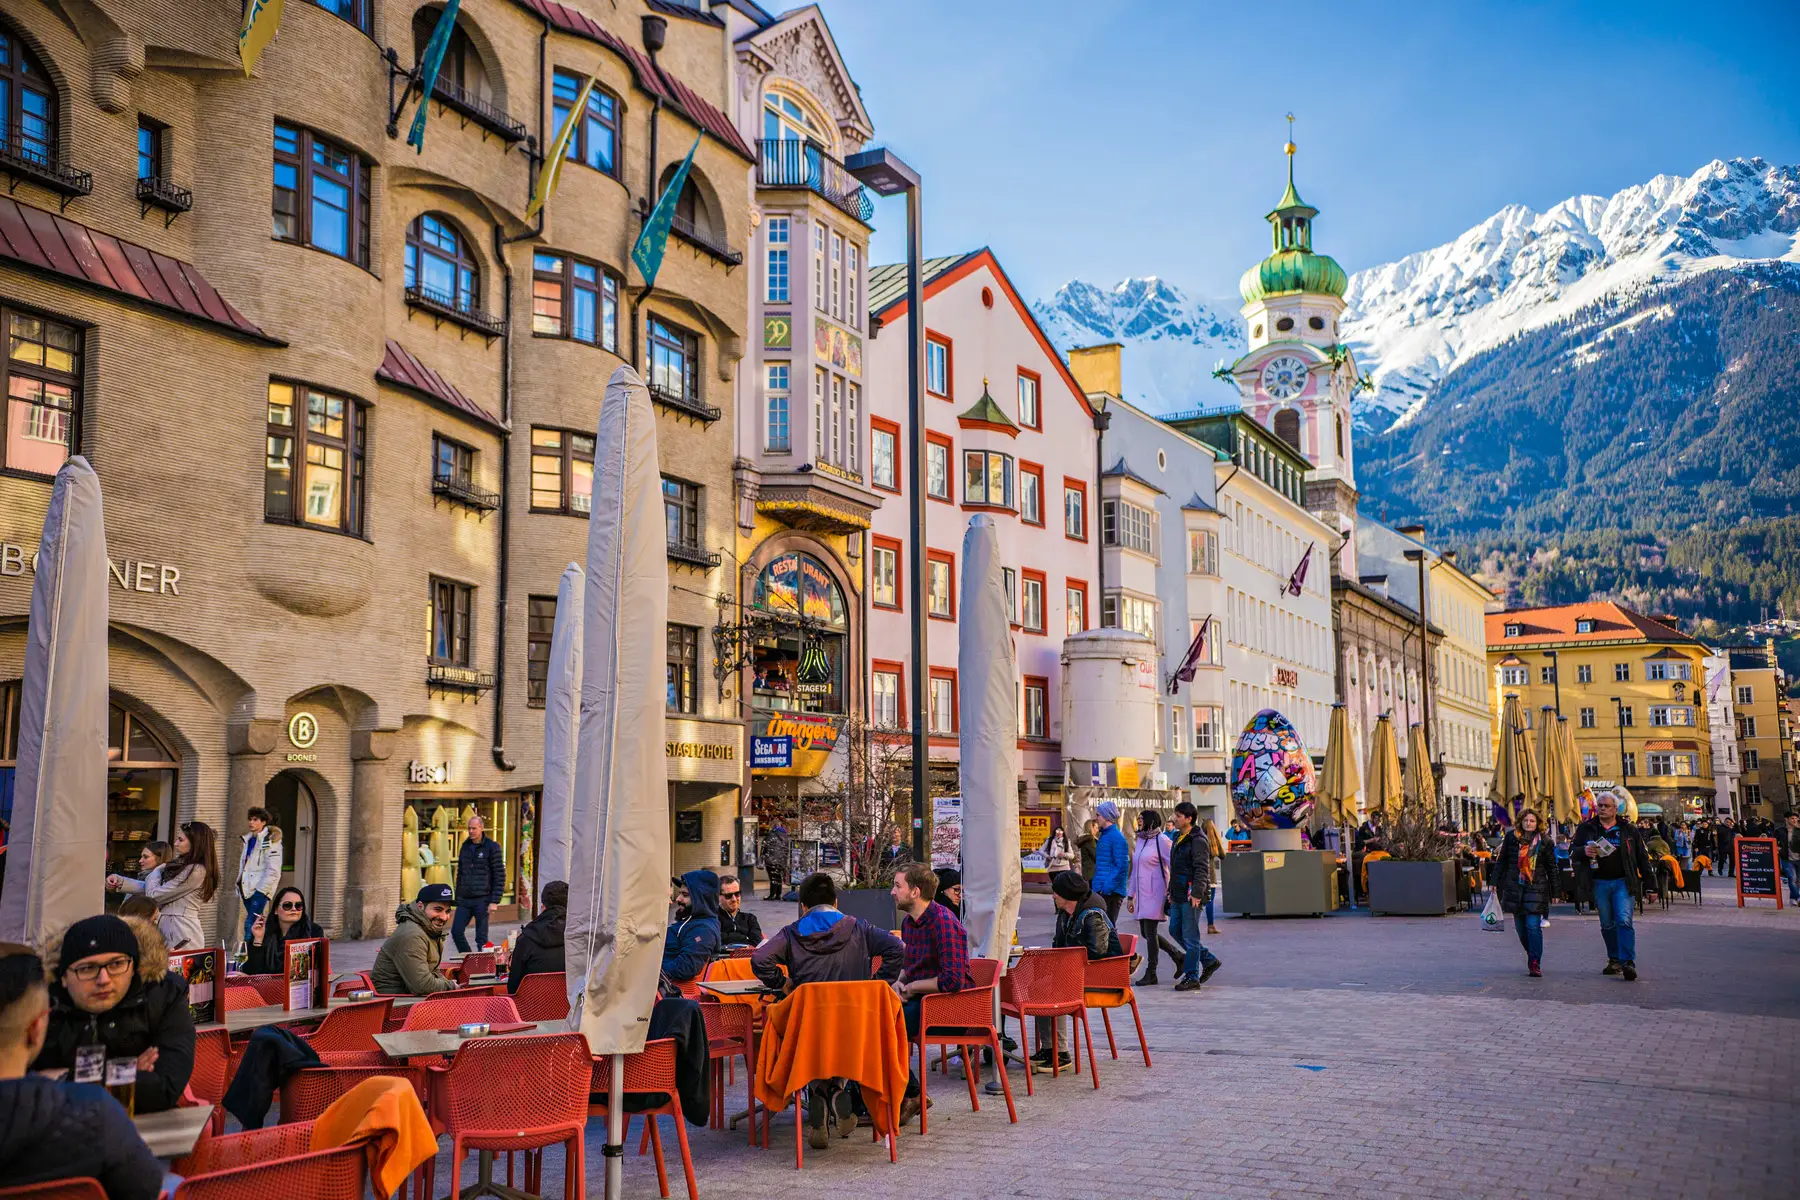 The city center of Innsbruck